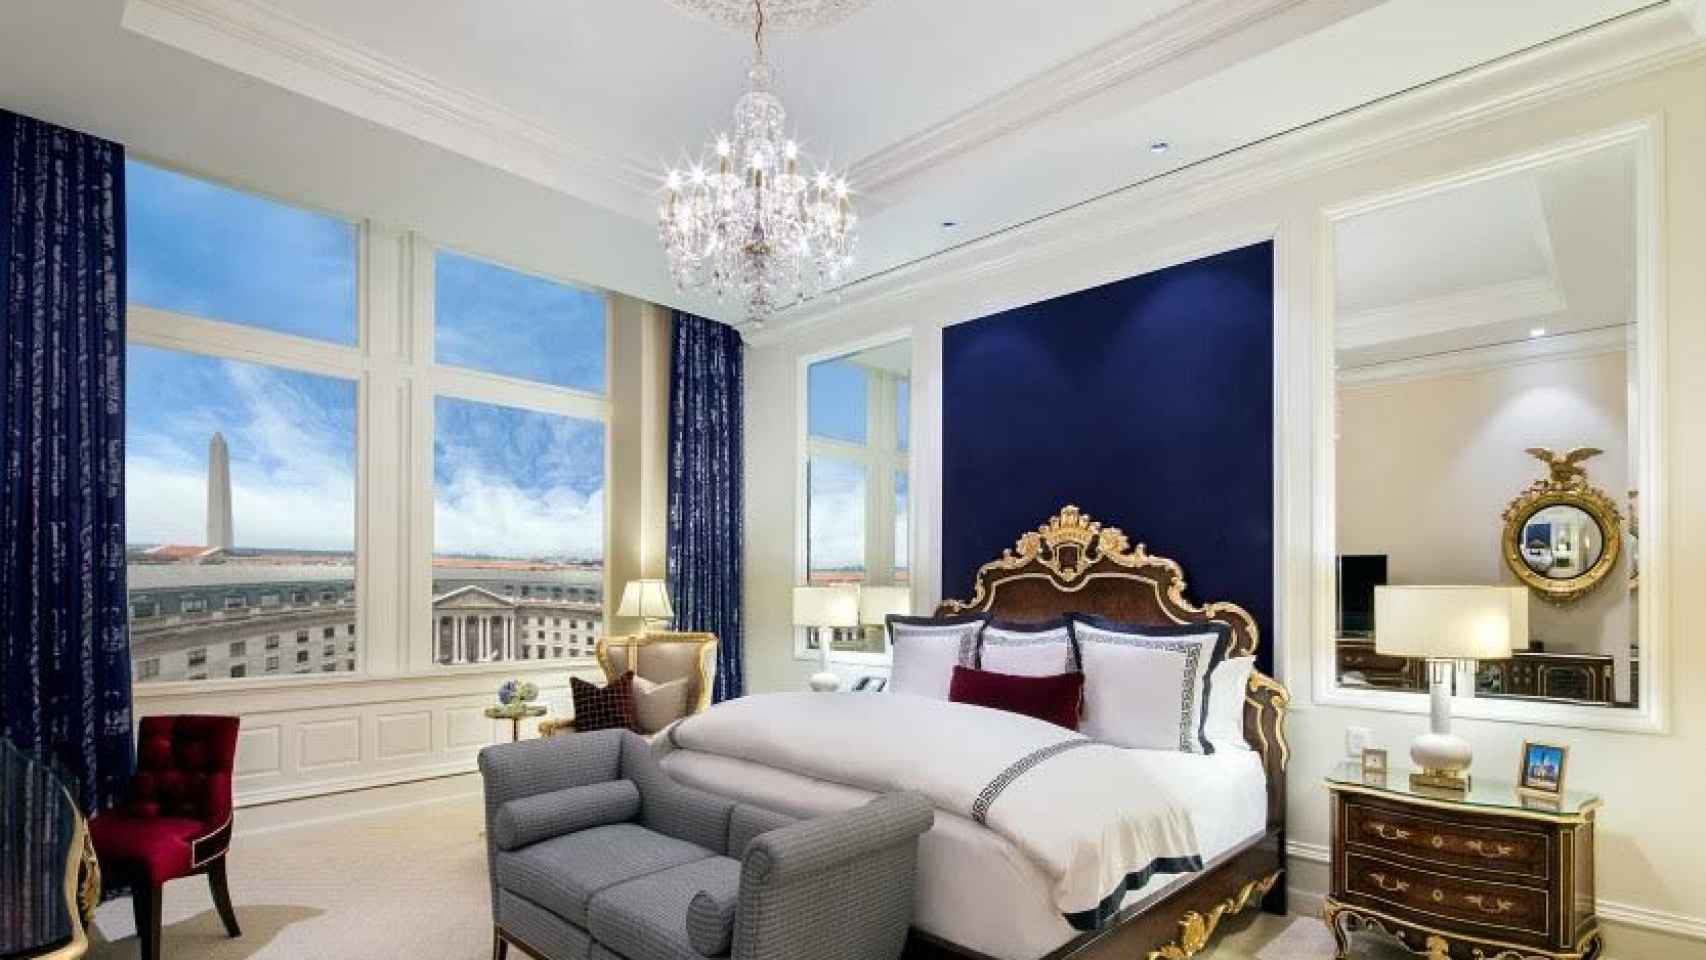 Un lujoso cuarto del hotel de Trump en la capital.